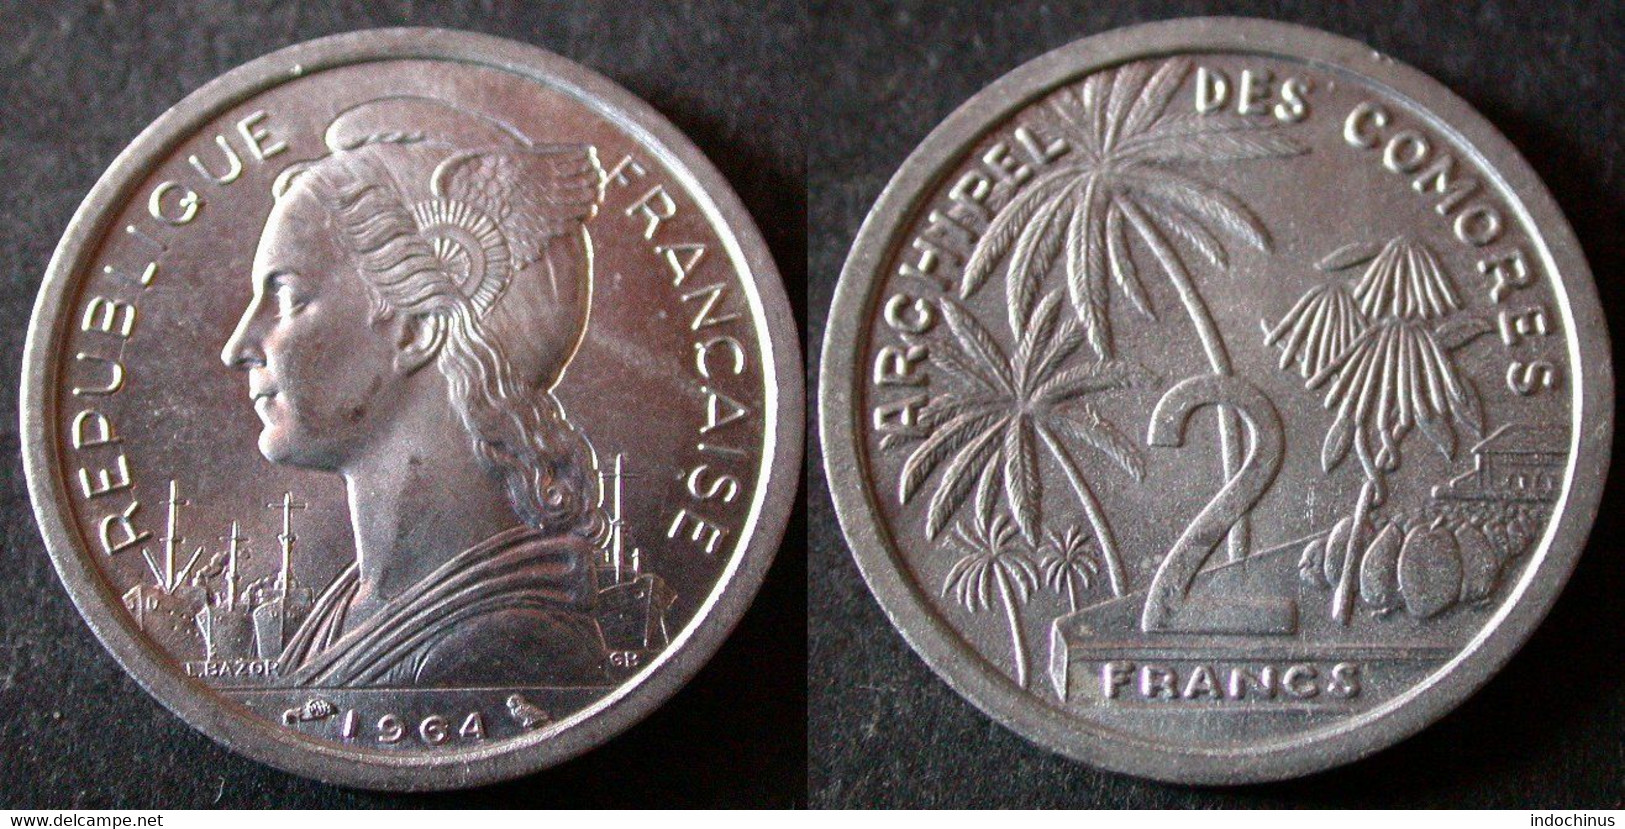 COMORES  2 Francs 1964 UNC / SUP  COMOROS   PORT OFFERT - Comoros